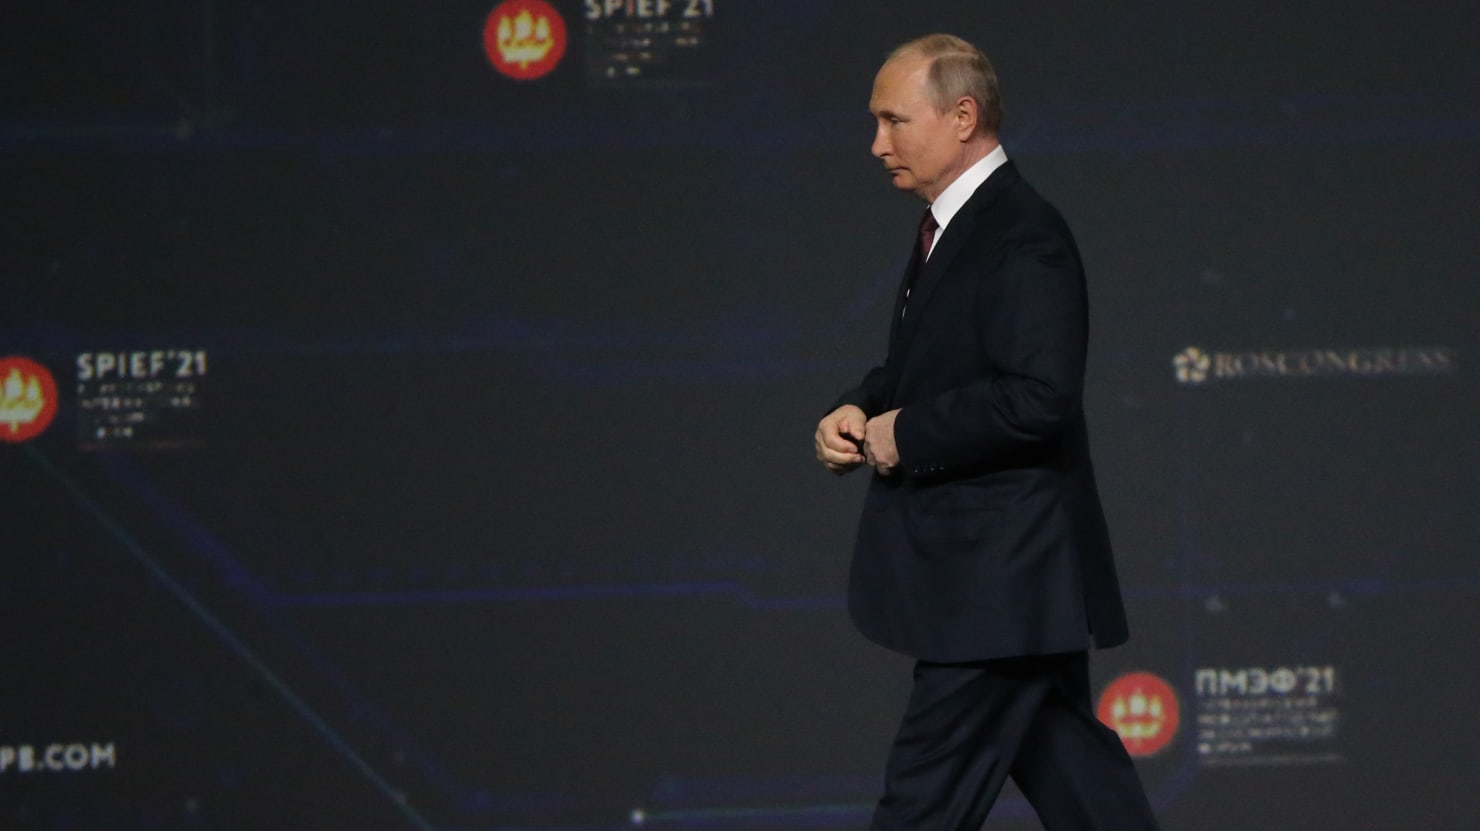 El Foro Económico «Davos Ruso» de Vladimir Putin en San Petersburgo es de hecho un gran y triste desastre